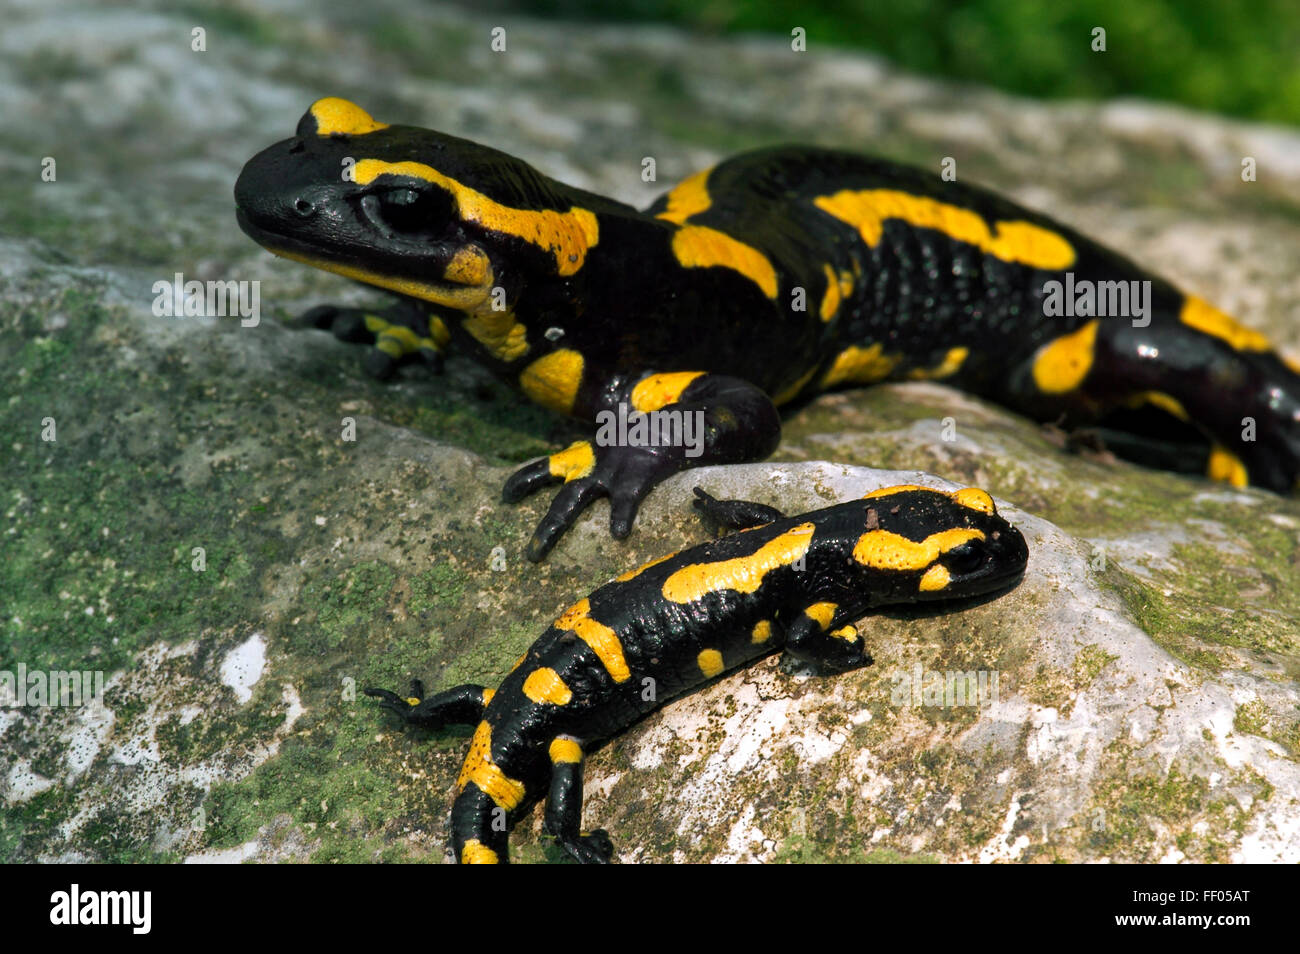 European salamander / Fire salamander (Salamandra salamandra) adult with juvenile on rock Stock Photo